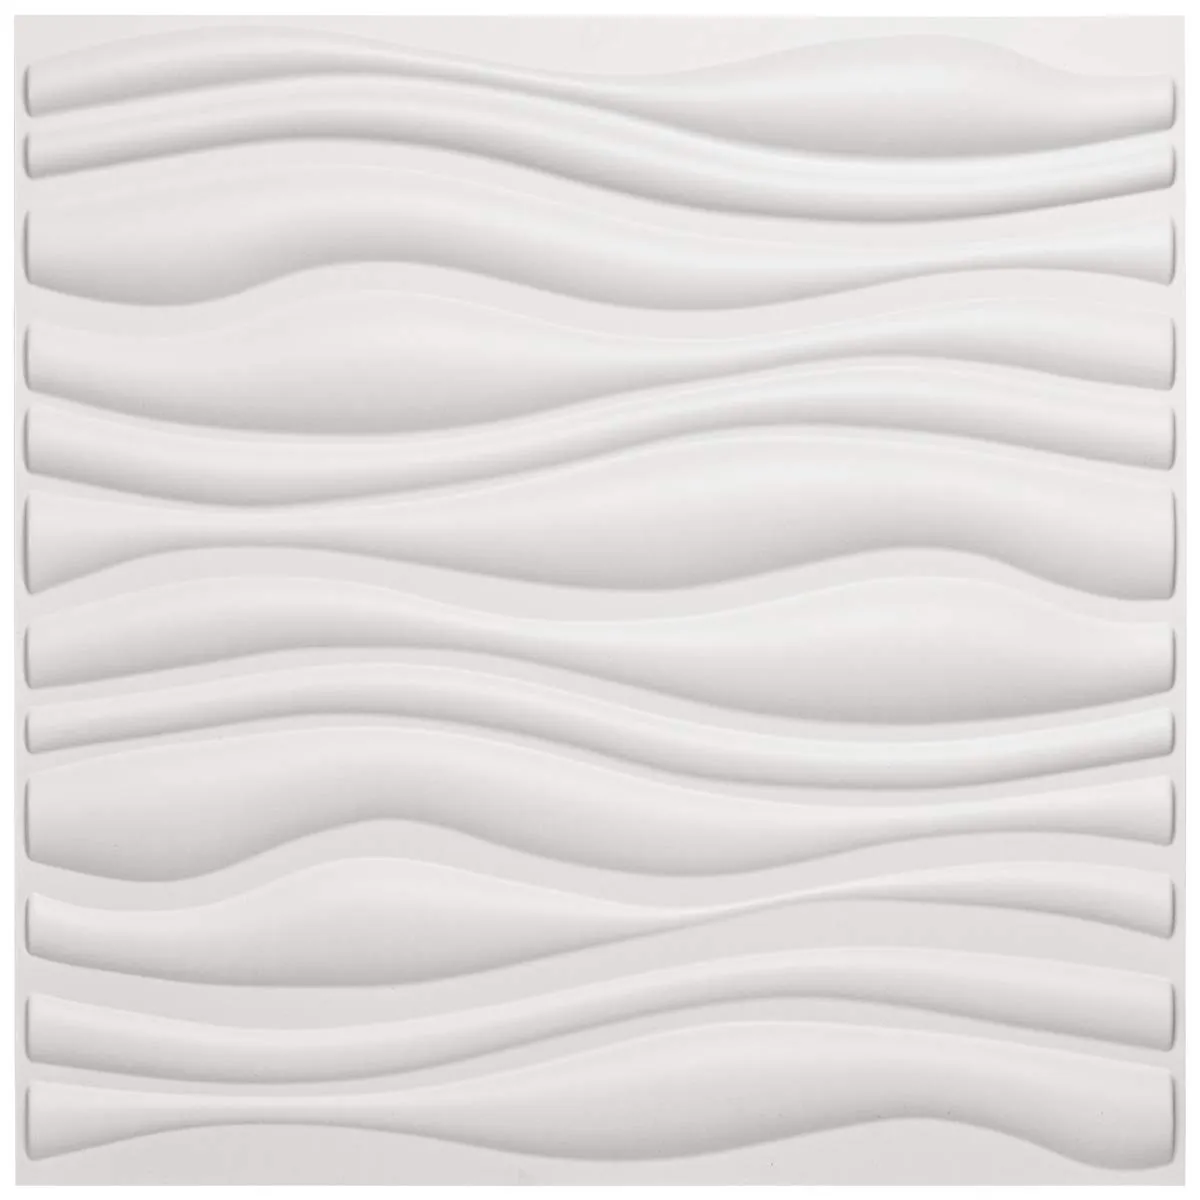 Art3D 50x50cm Weiße Wandplatten PVC Wave Board Textured Schalldämpfe Für Wohnzimmer Schlafzimmer (Packung mit 12 Fliesen)